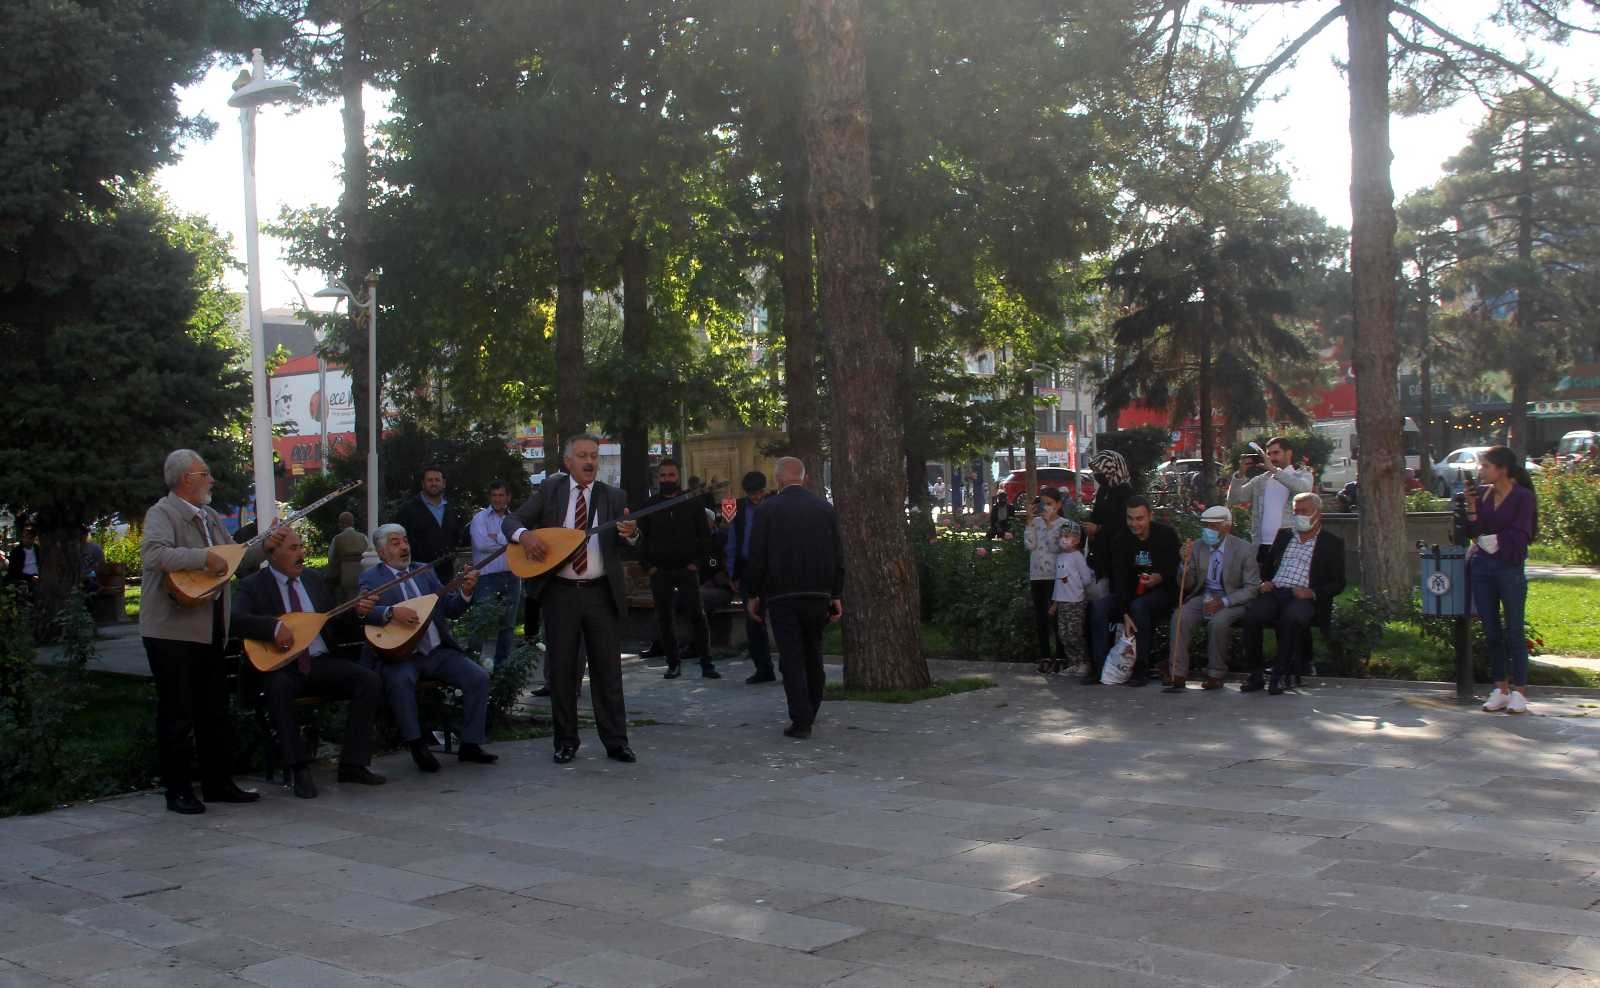 (Özel) Popüler sanatçılara inat 5 bin yıllık âşıklık geleneğini yaşatmaya çalışıyorlar #erzincan